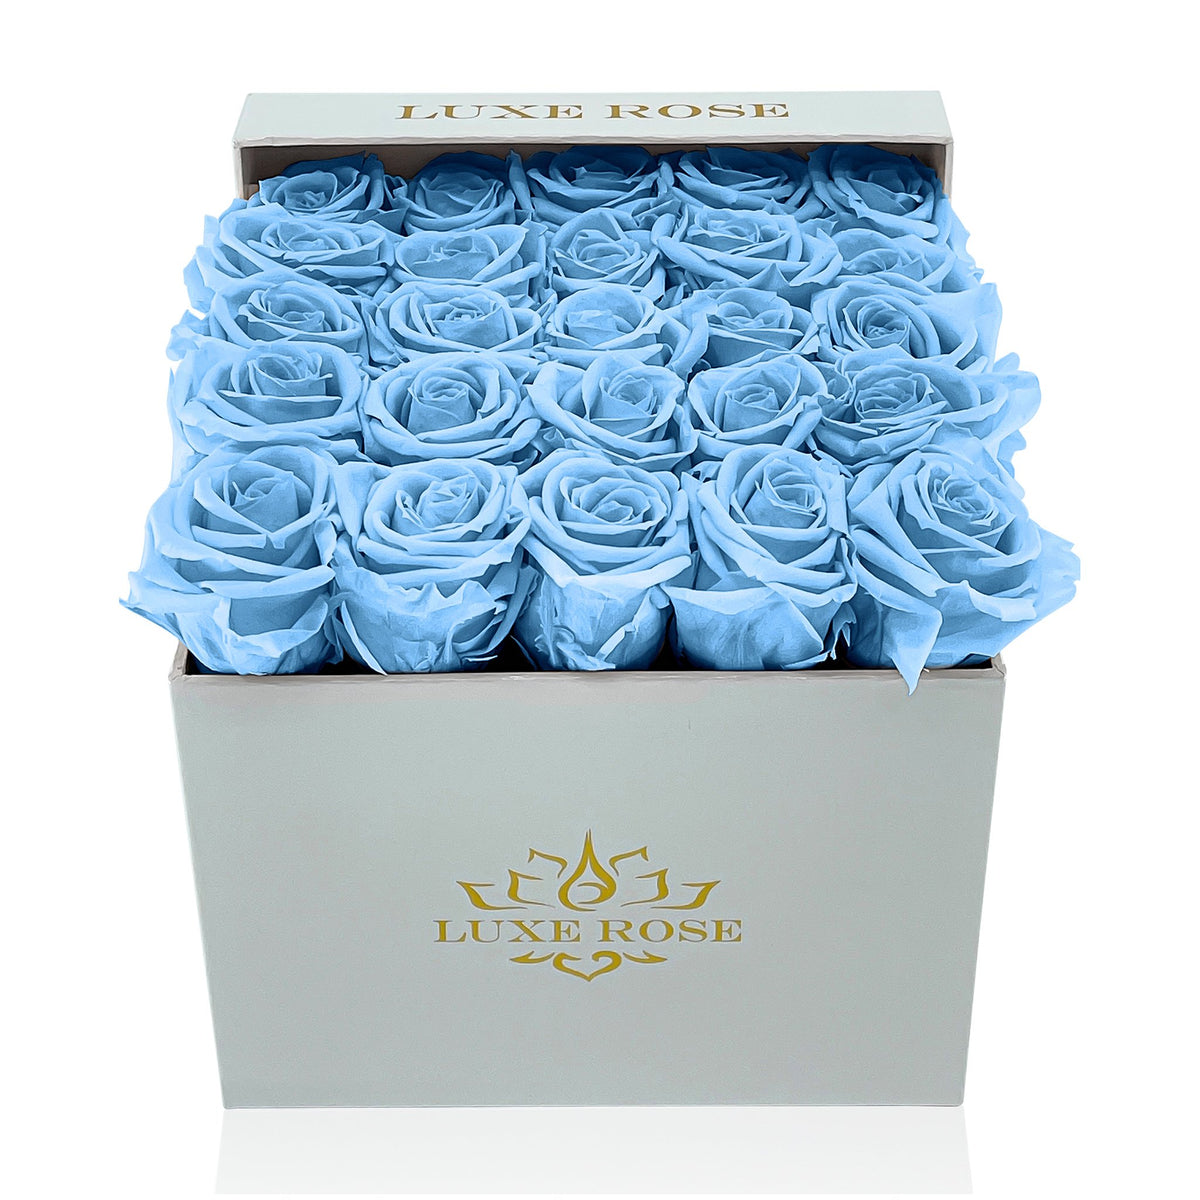 Preserved Roses Small Box | Light Blue - White - Roses